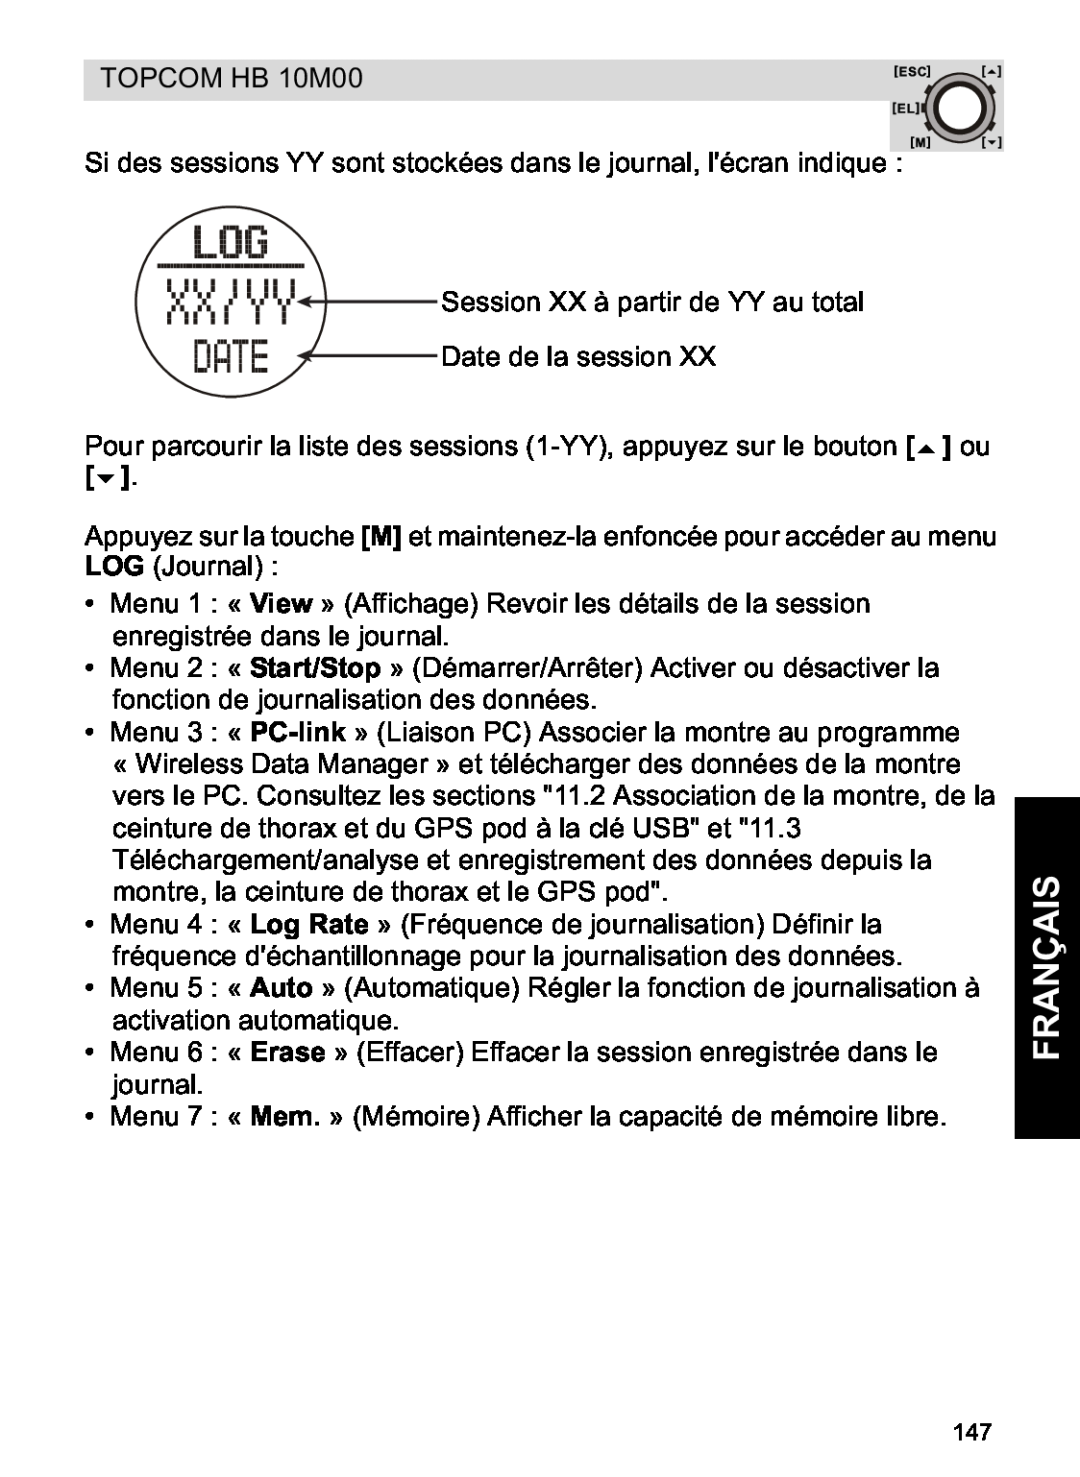 Topcom HB 10M00 manual Français 